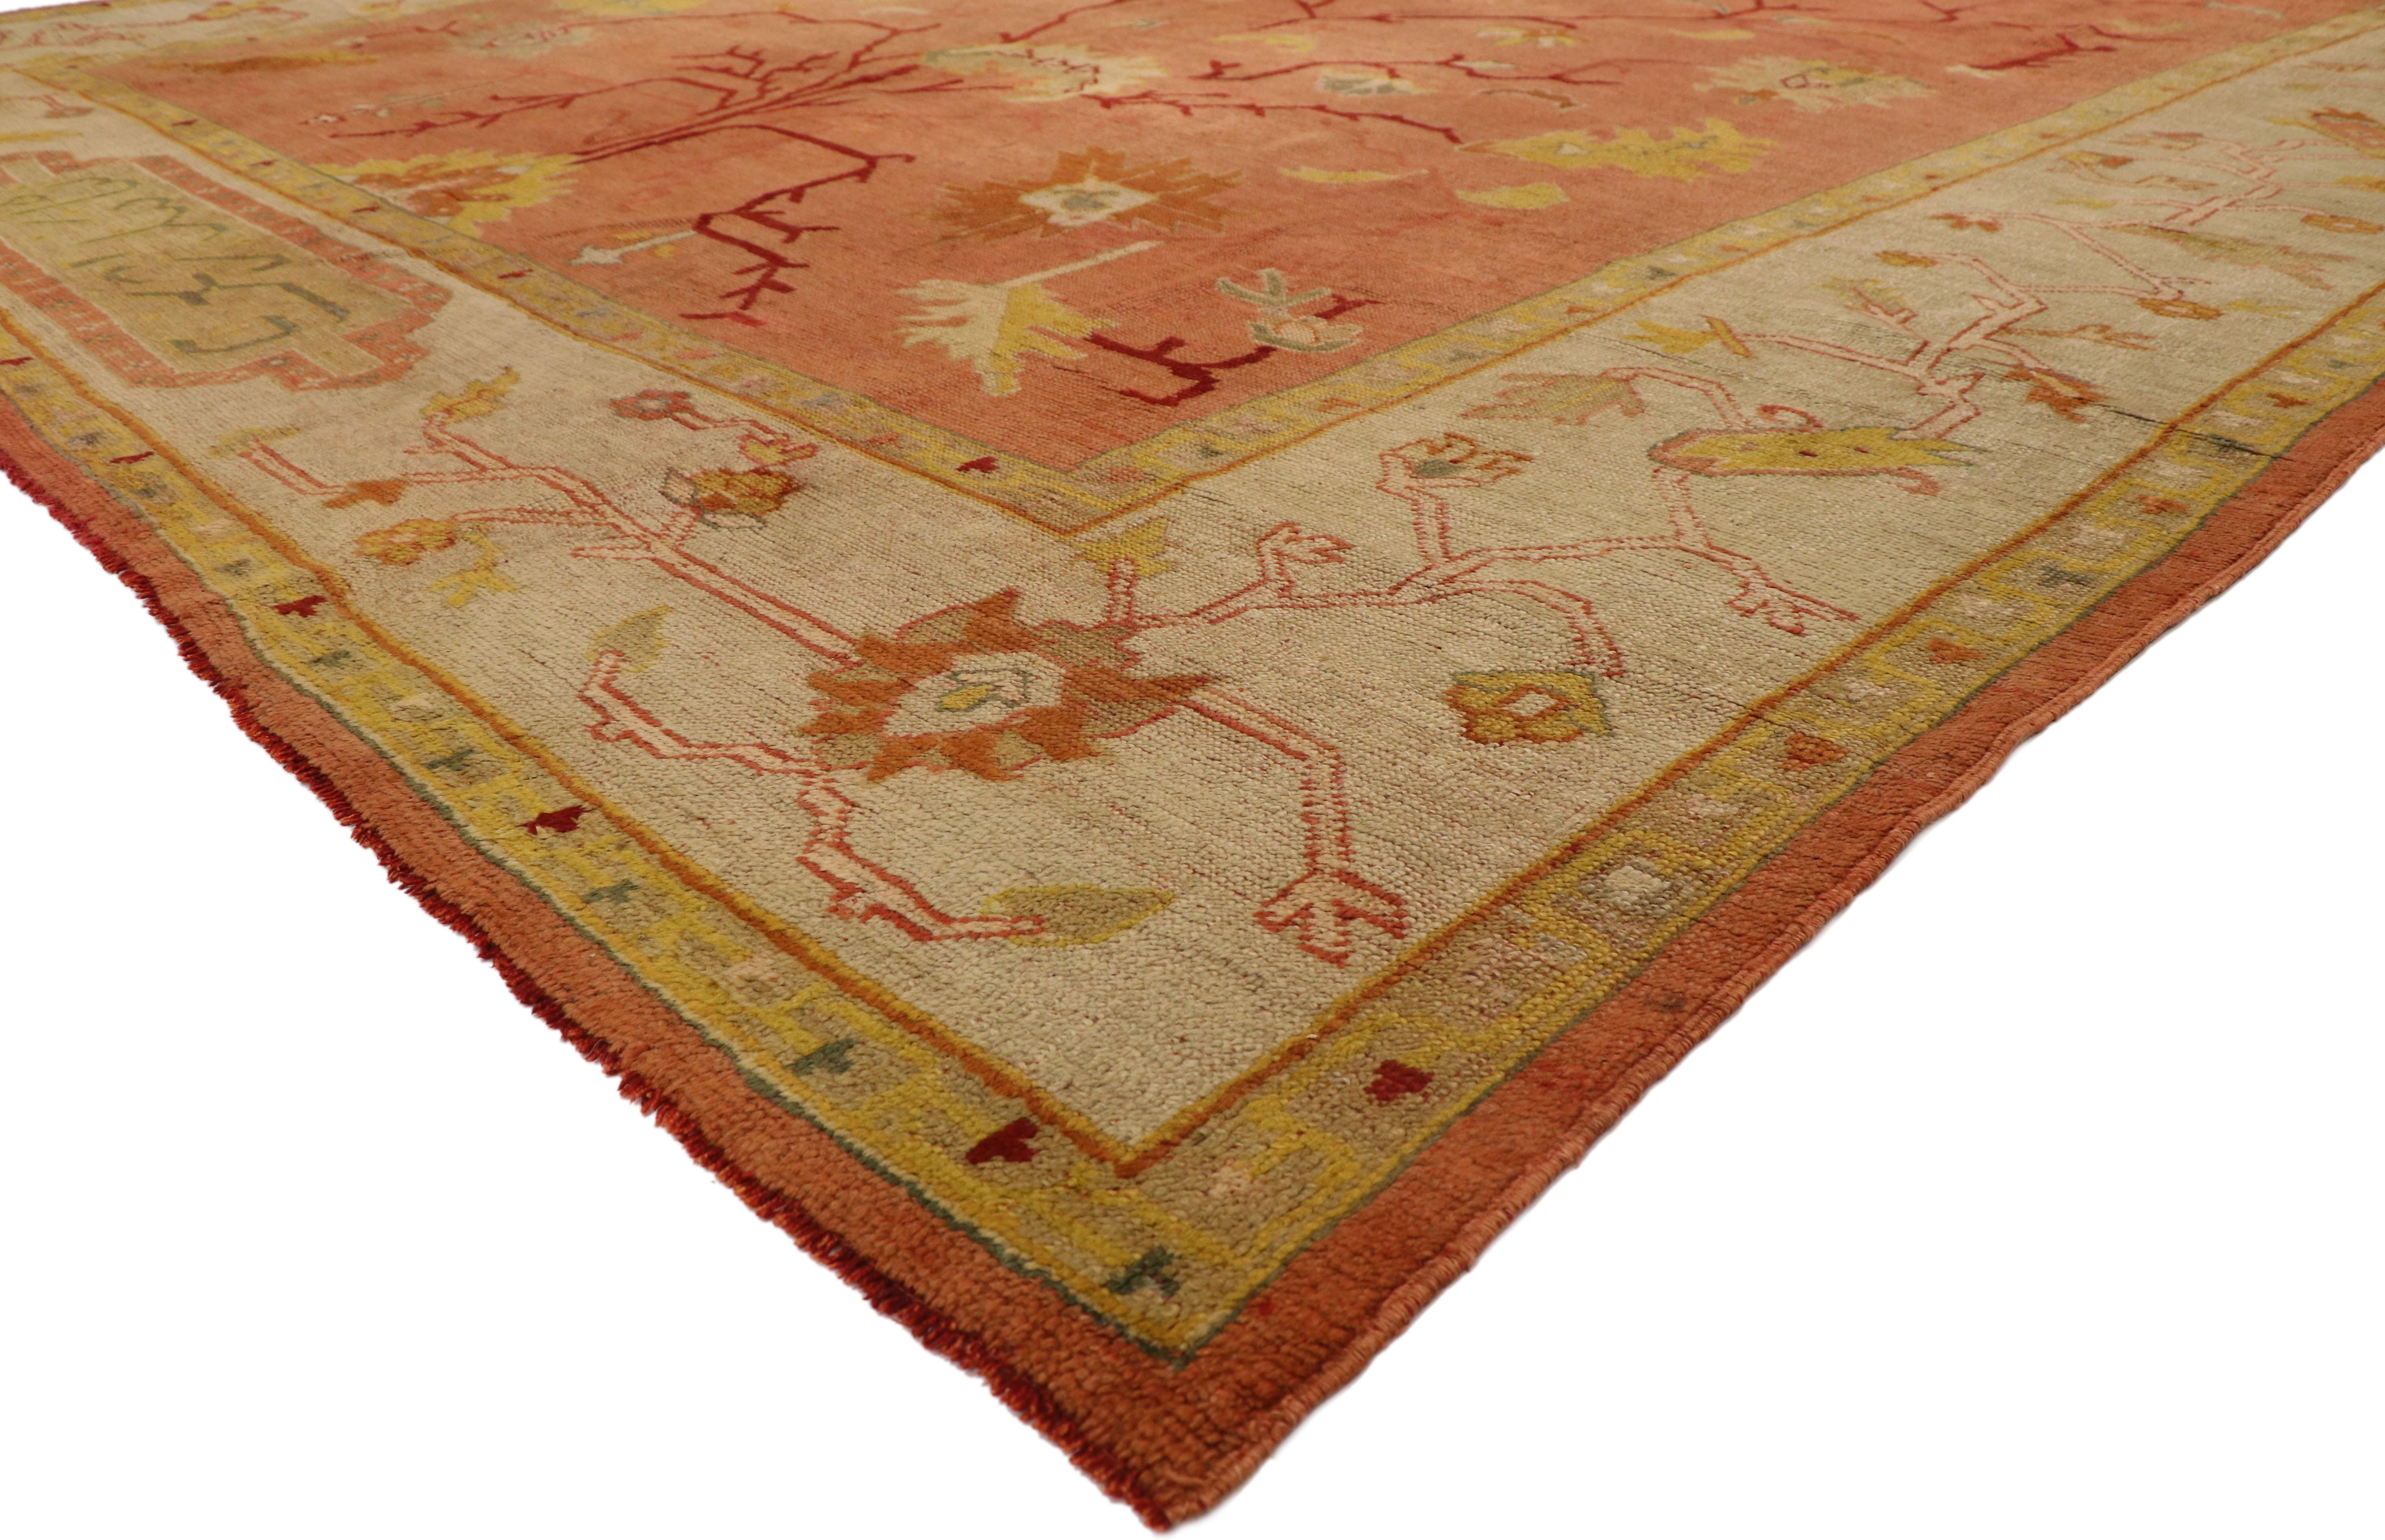 77092, antiker türkischer Oushak-Teppich mit Lebensbaum-Muster und mediterranem Stil. Dieser antike türkische Oushak-Teppich aus handgeknüpfter Wolle vermittelt ein Gefühl von Wärme und willkommener Ungezwungenheit und zeichnet sich durch ein